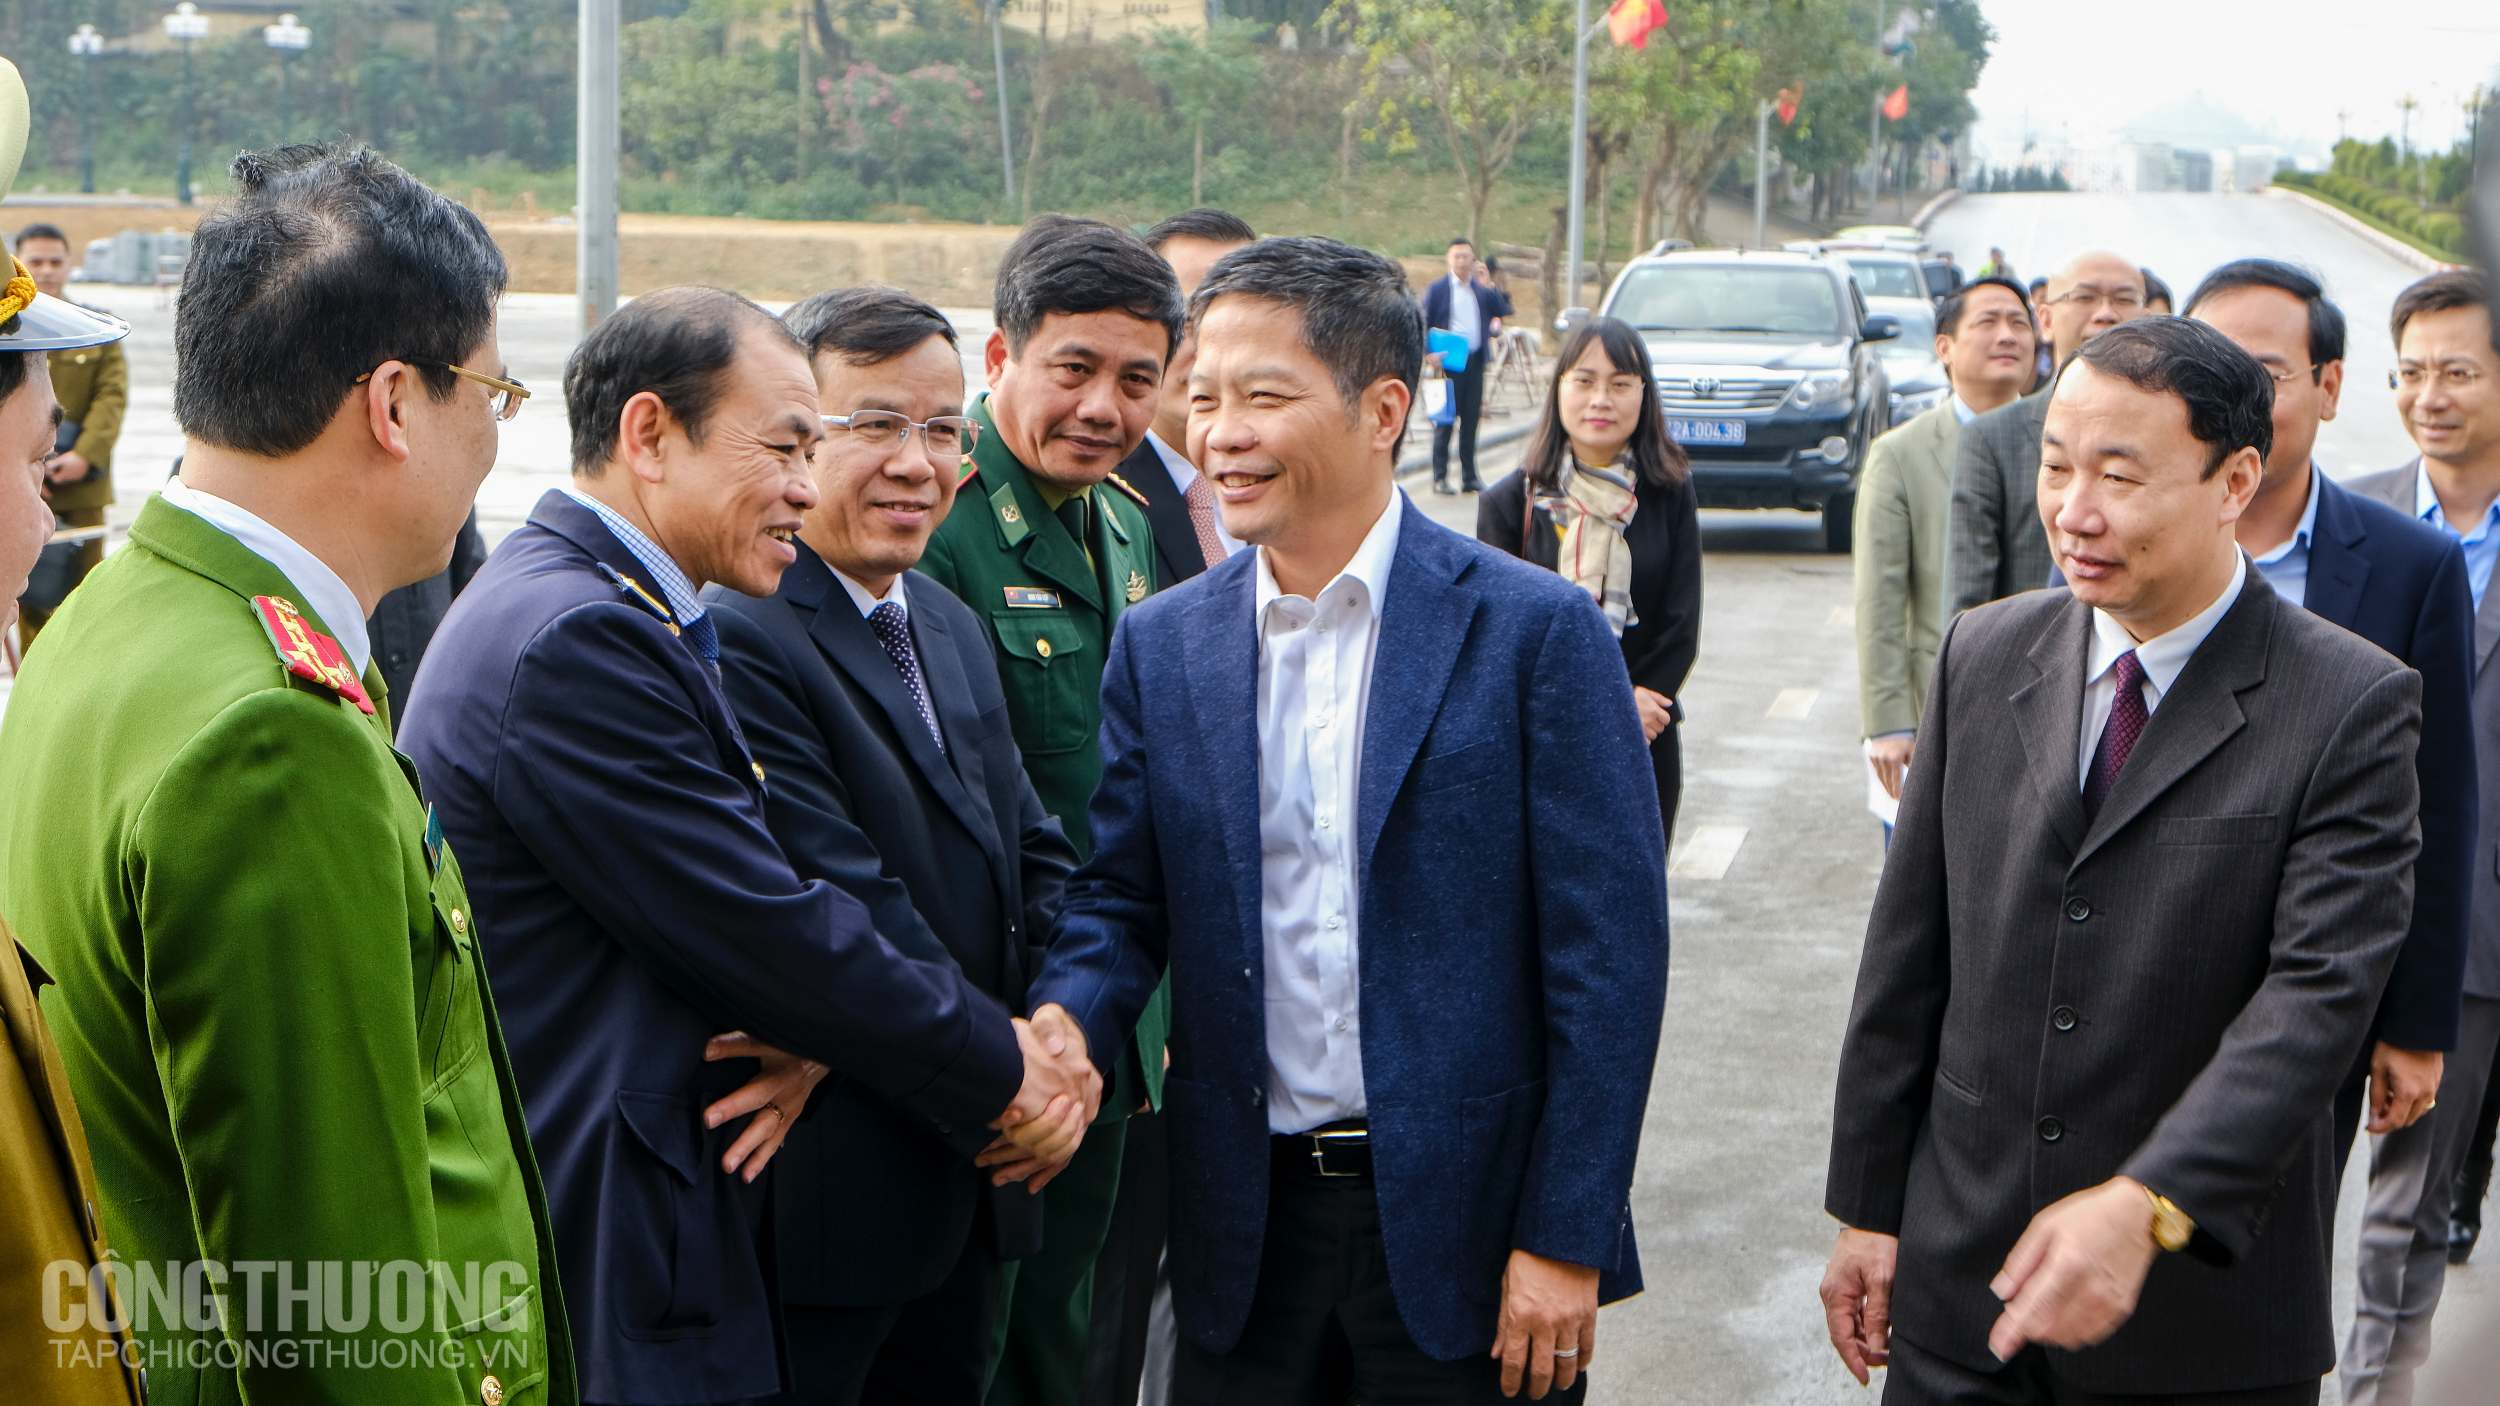 Bộ trưởng Trần Tuấn Anh gặp mặt và chúc mừng lực lượng chức năng tại cửa khẩu Hữu Nghị, Lạng Sơn sáng 29 Tết